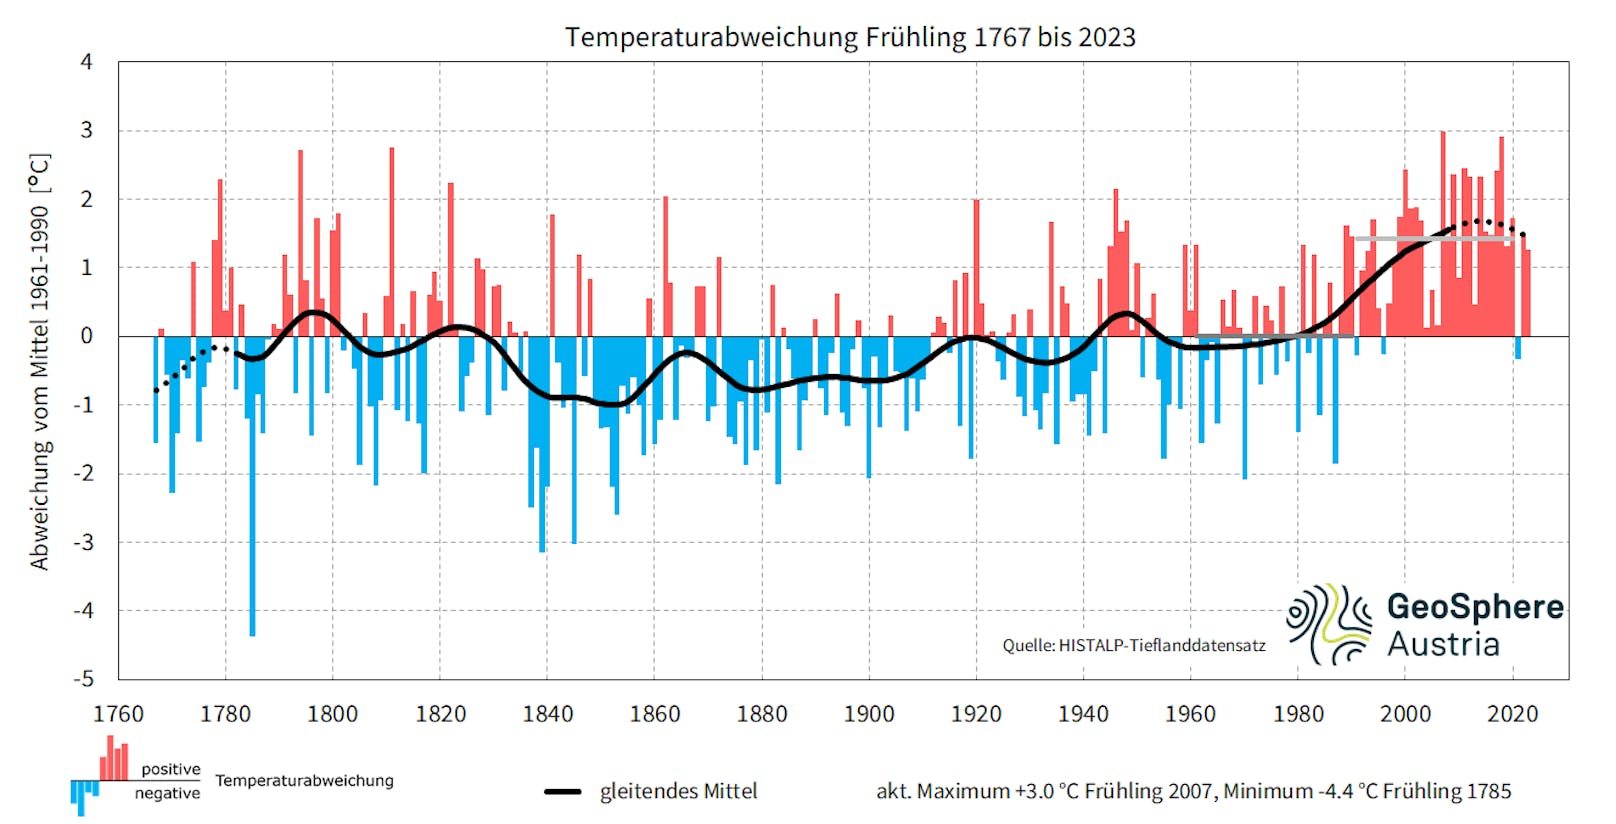 Temperaturabweichung der Jahreszeit Frühling in Österreich 1767 bis 2023.